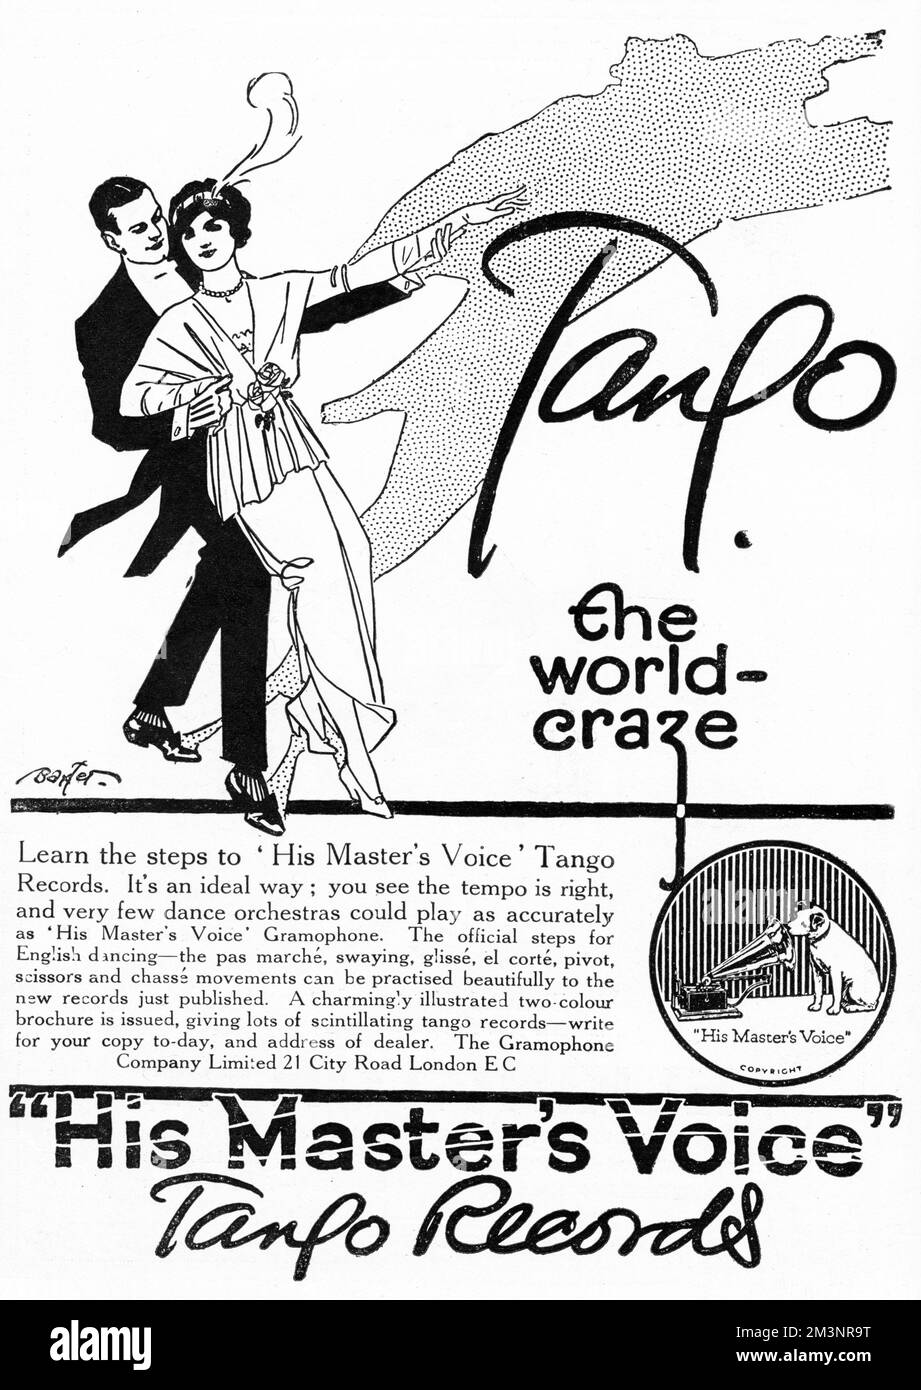 Publicité pour les records de Tango de sa voix de maîtres, encourageant les gens à apprendre les étapes de cette nouvelle folie de danse avec l'aide de leurs dossiers. Le tango a pris la Grande-Bretagne par la tempête en 1913. Date: 1913 Banque D'Images